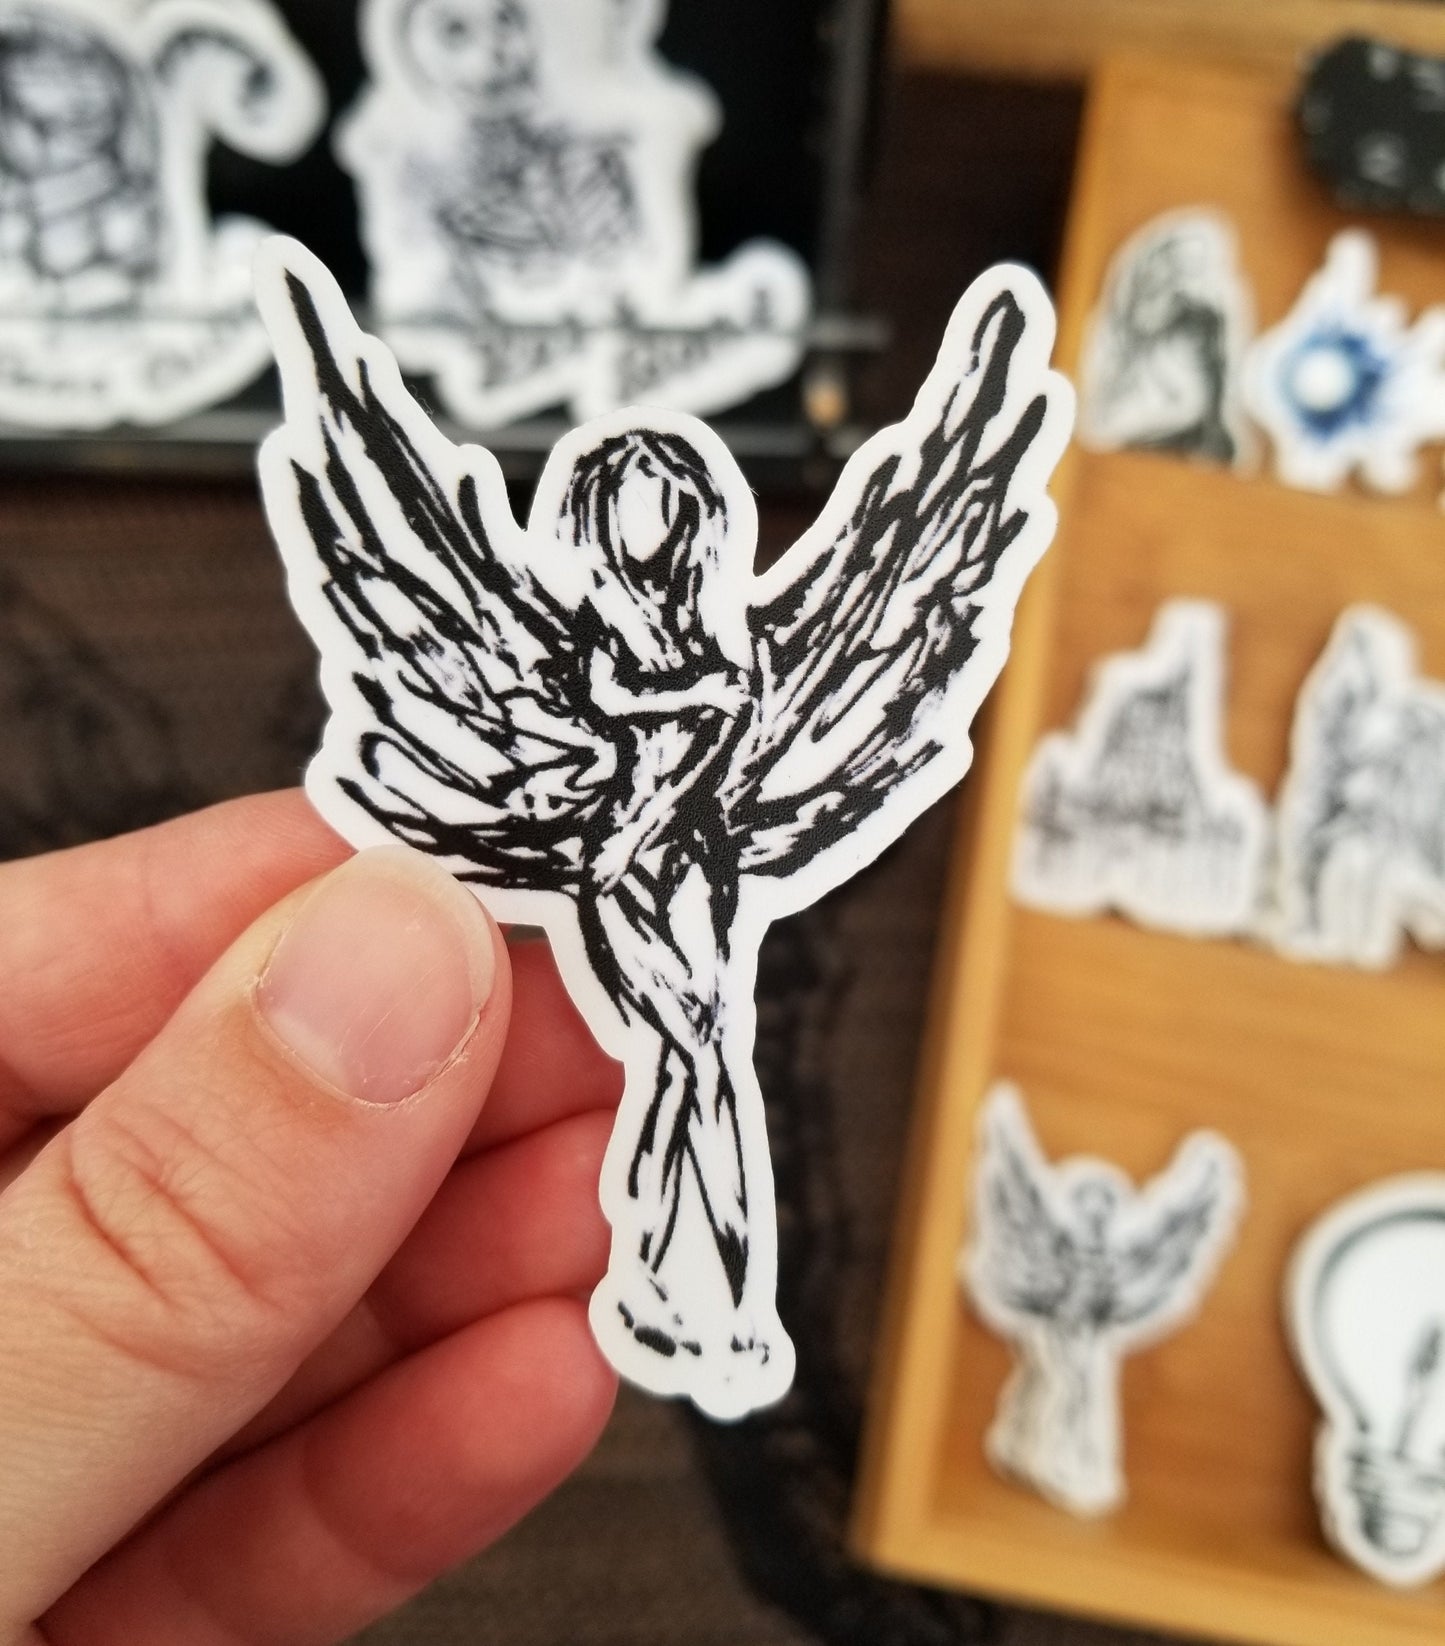 Angel Sticker